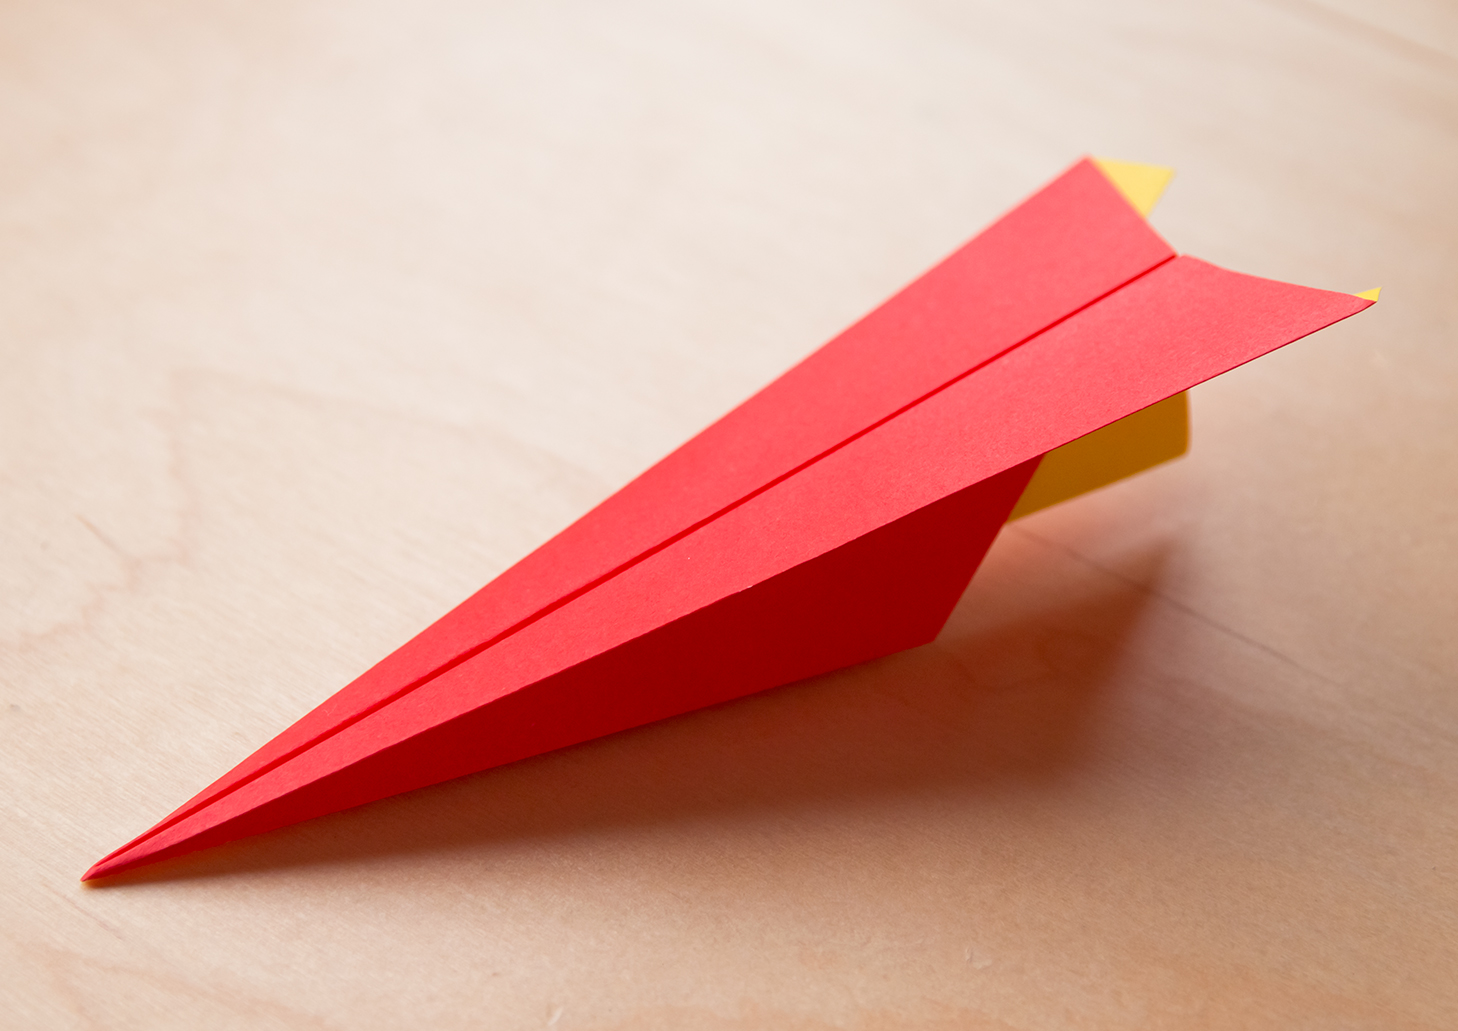 折り紙 かみひこうき やりひこうき の折り方 簡単でよく飛ぶ